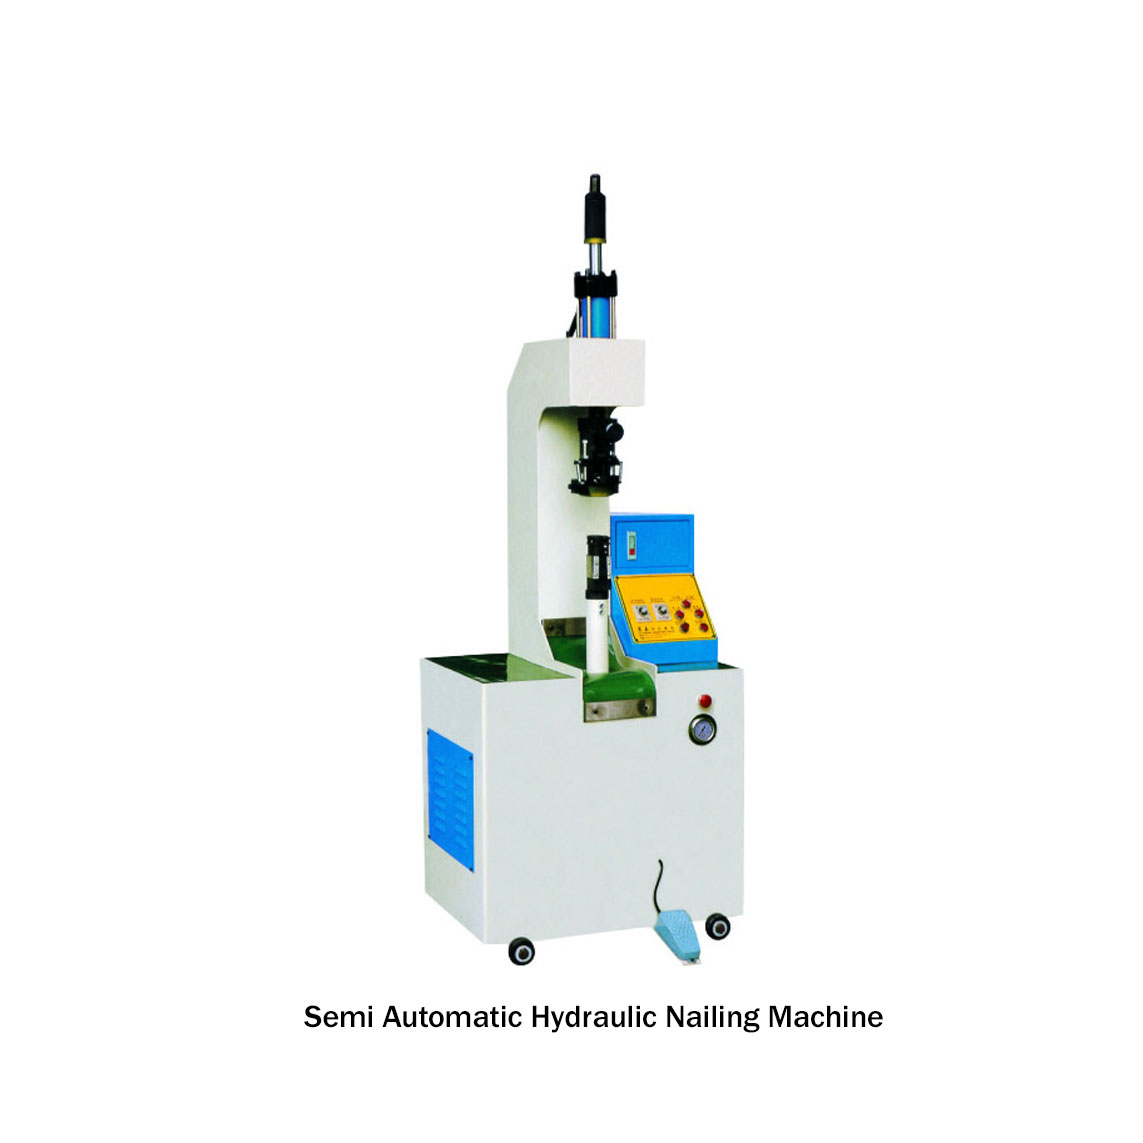 Semi Automatic Hydraulic Nailing Machine